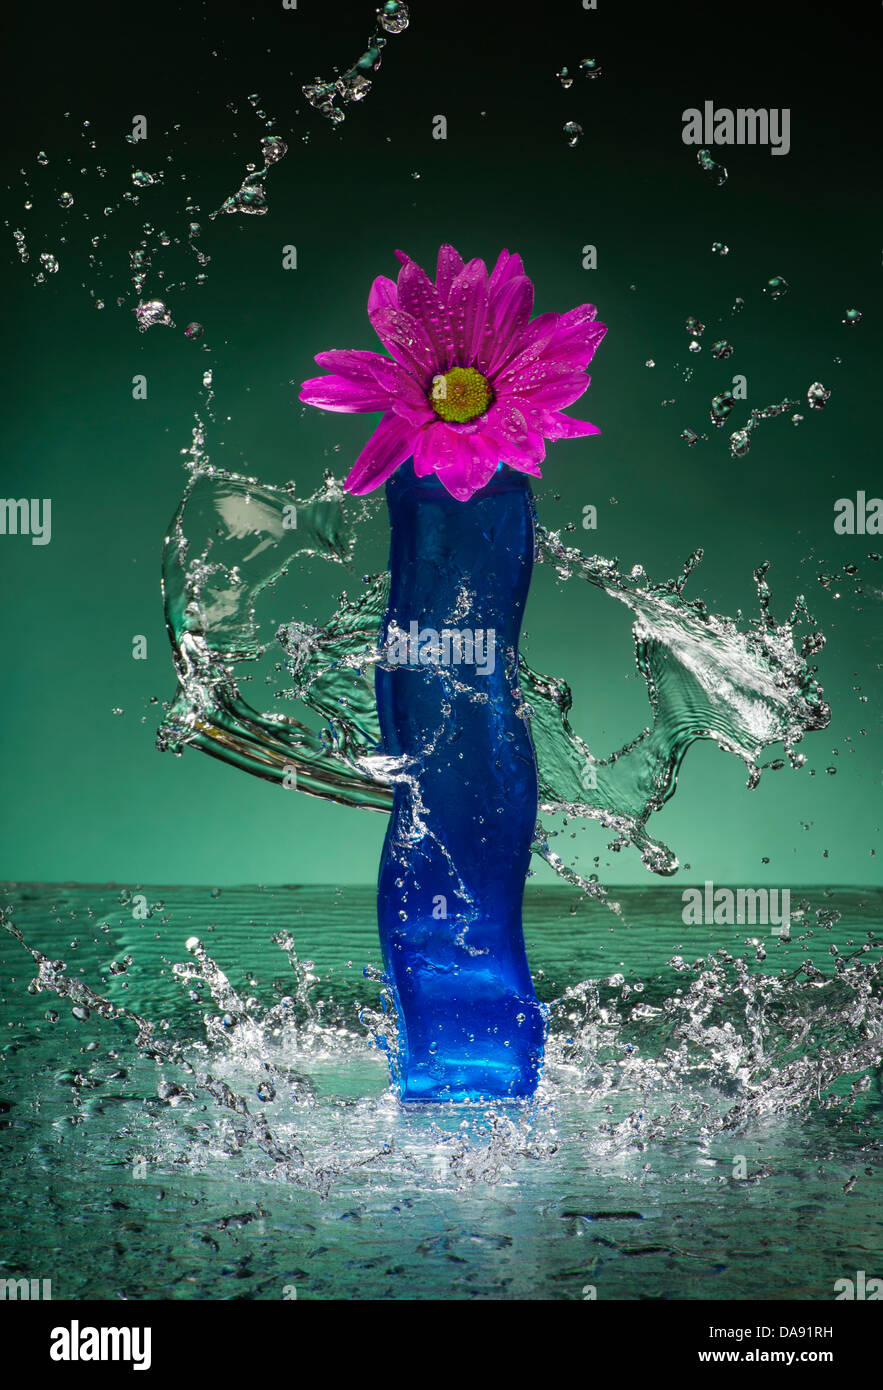 Blumen In blauer kurvige Vase mit Spritzwasser Stockfoto